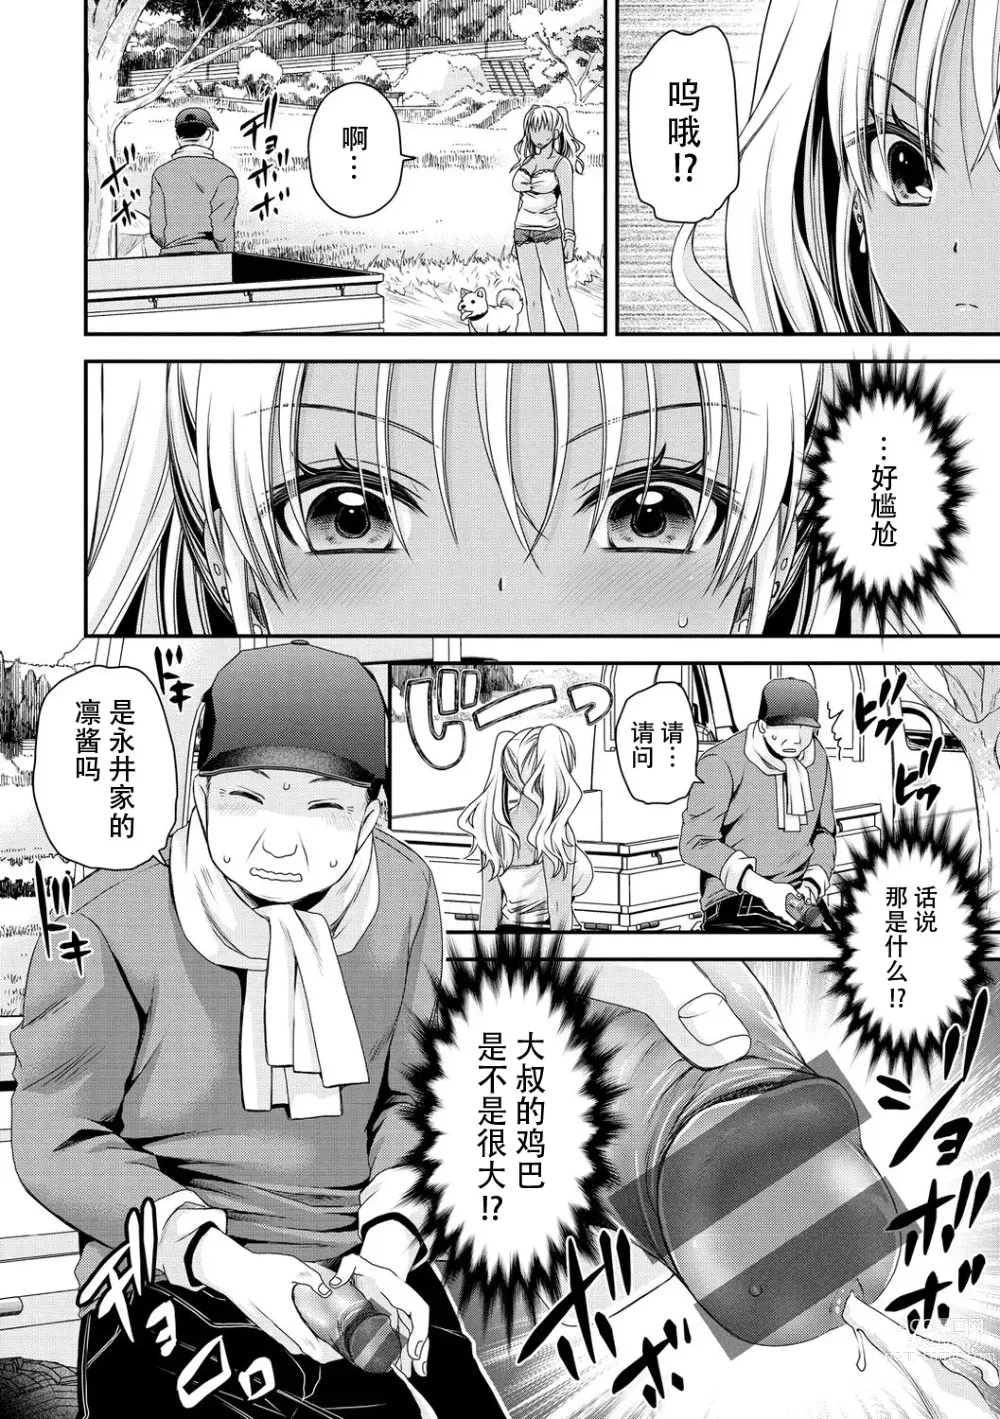 Page 2 of manga Inaka ni Bitch ga Yattekita! + Inaka ni Bitch ga Yattekita! Returns {Watashi No Tondemo Shotaiken)